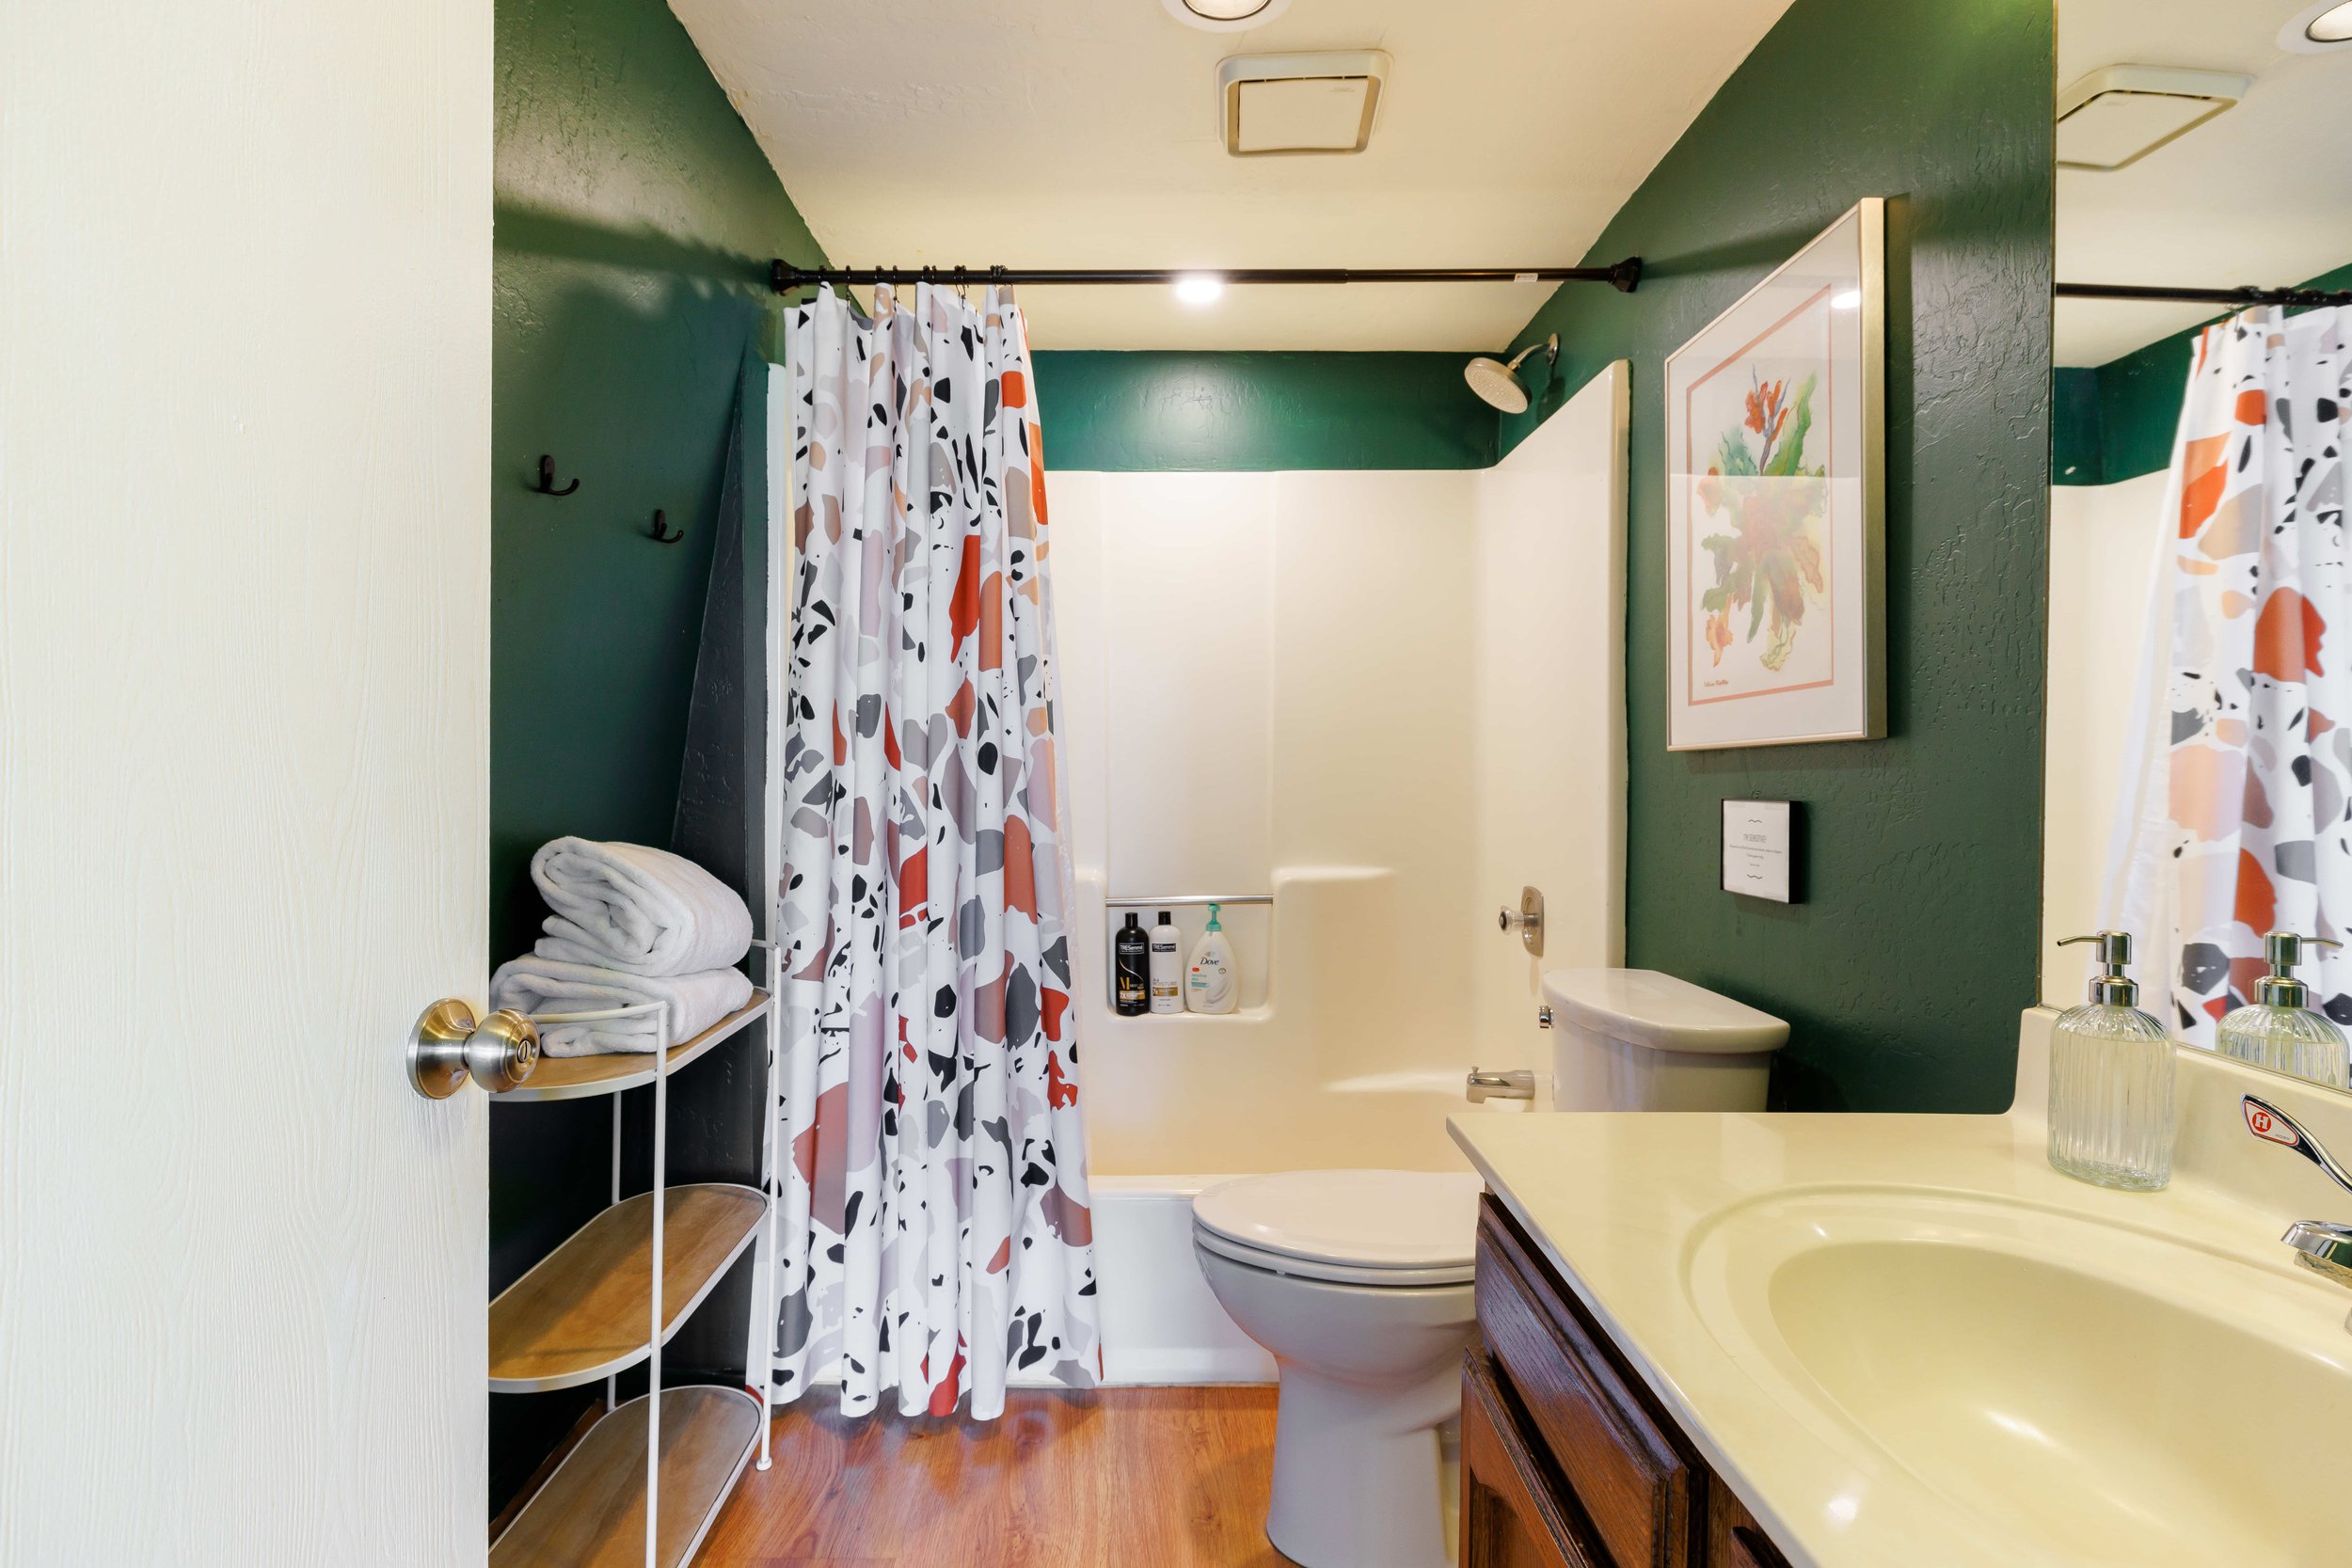 A fun green bathroom with a Terazzo shower curtain